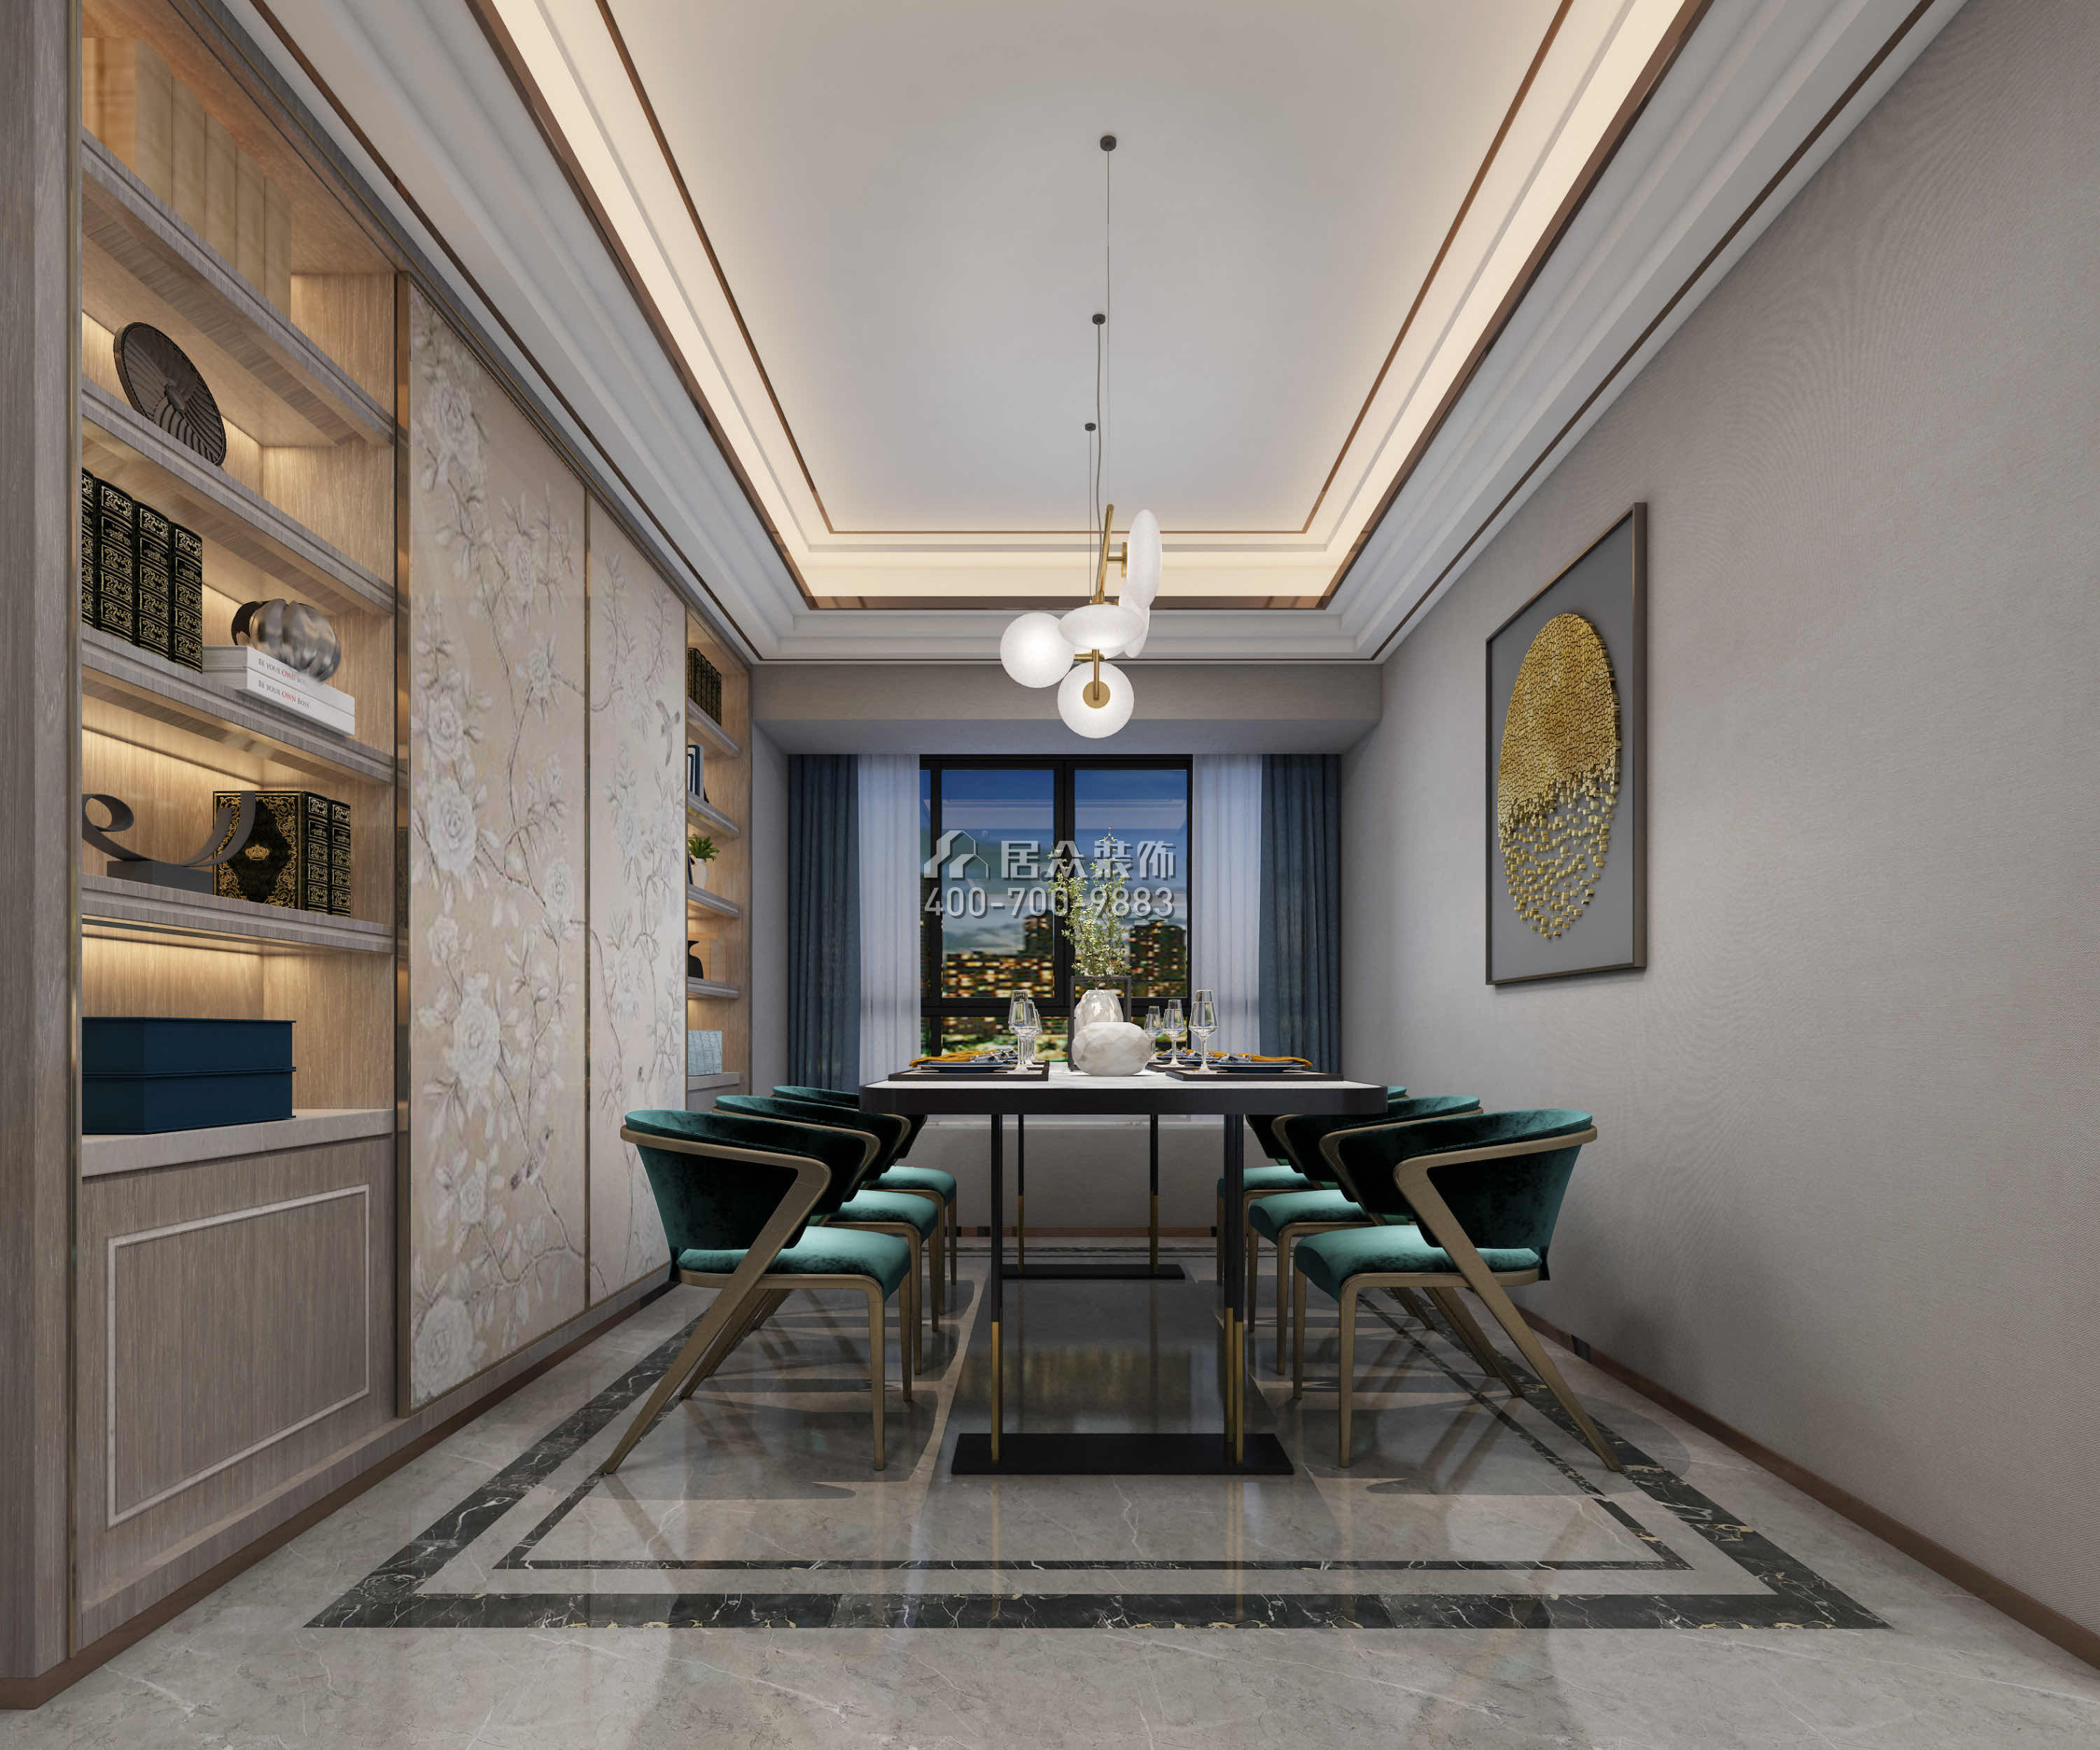 香山美墅五期165平方米中式风格平层户型餐厅装修效果图